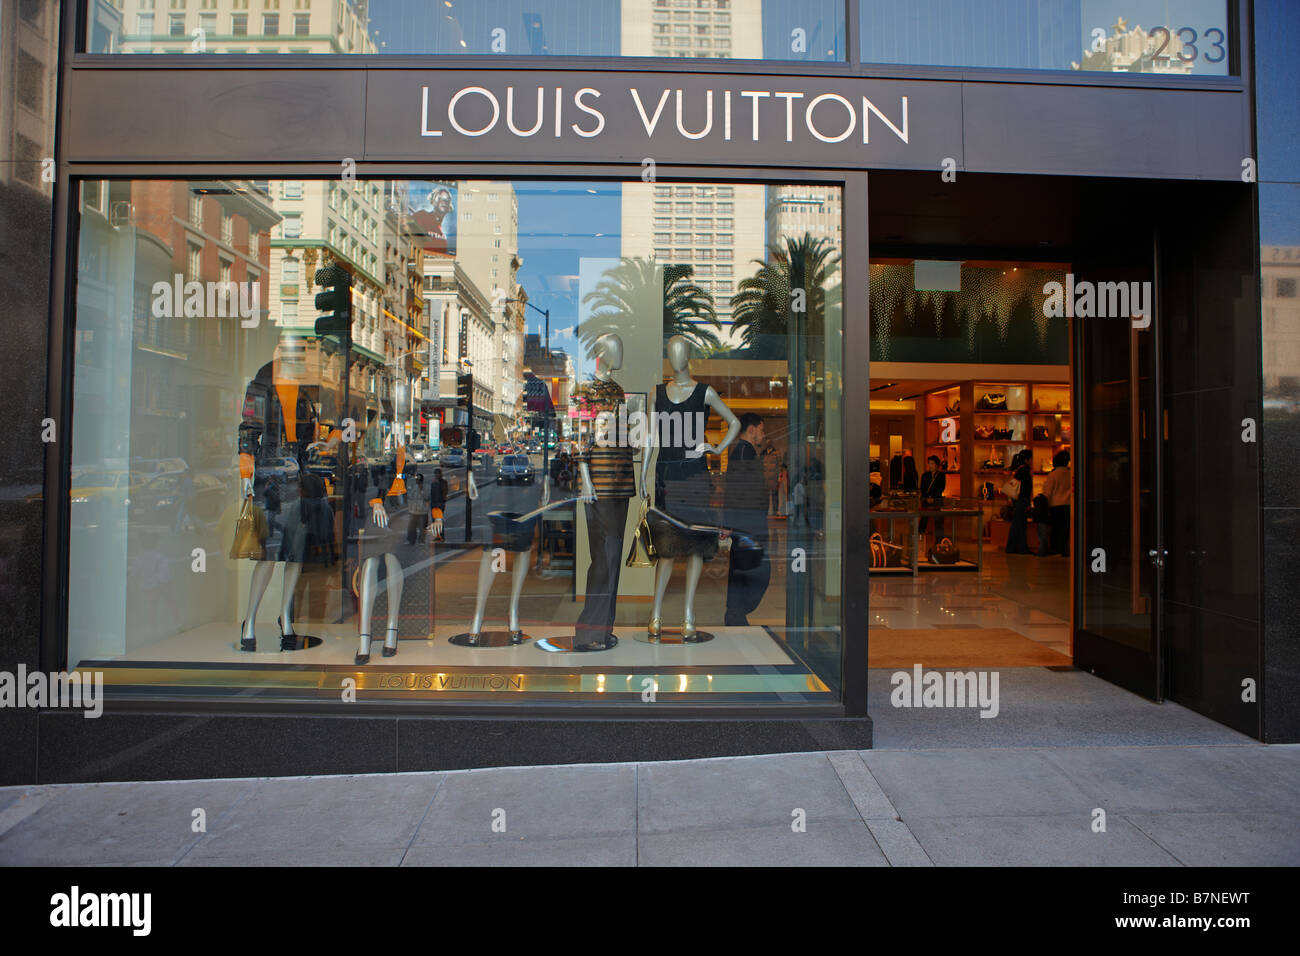 Louis Vuitton Opens Its Doors In La Jolla